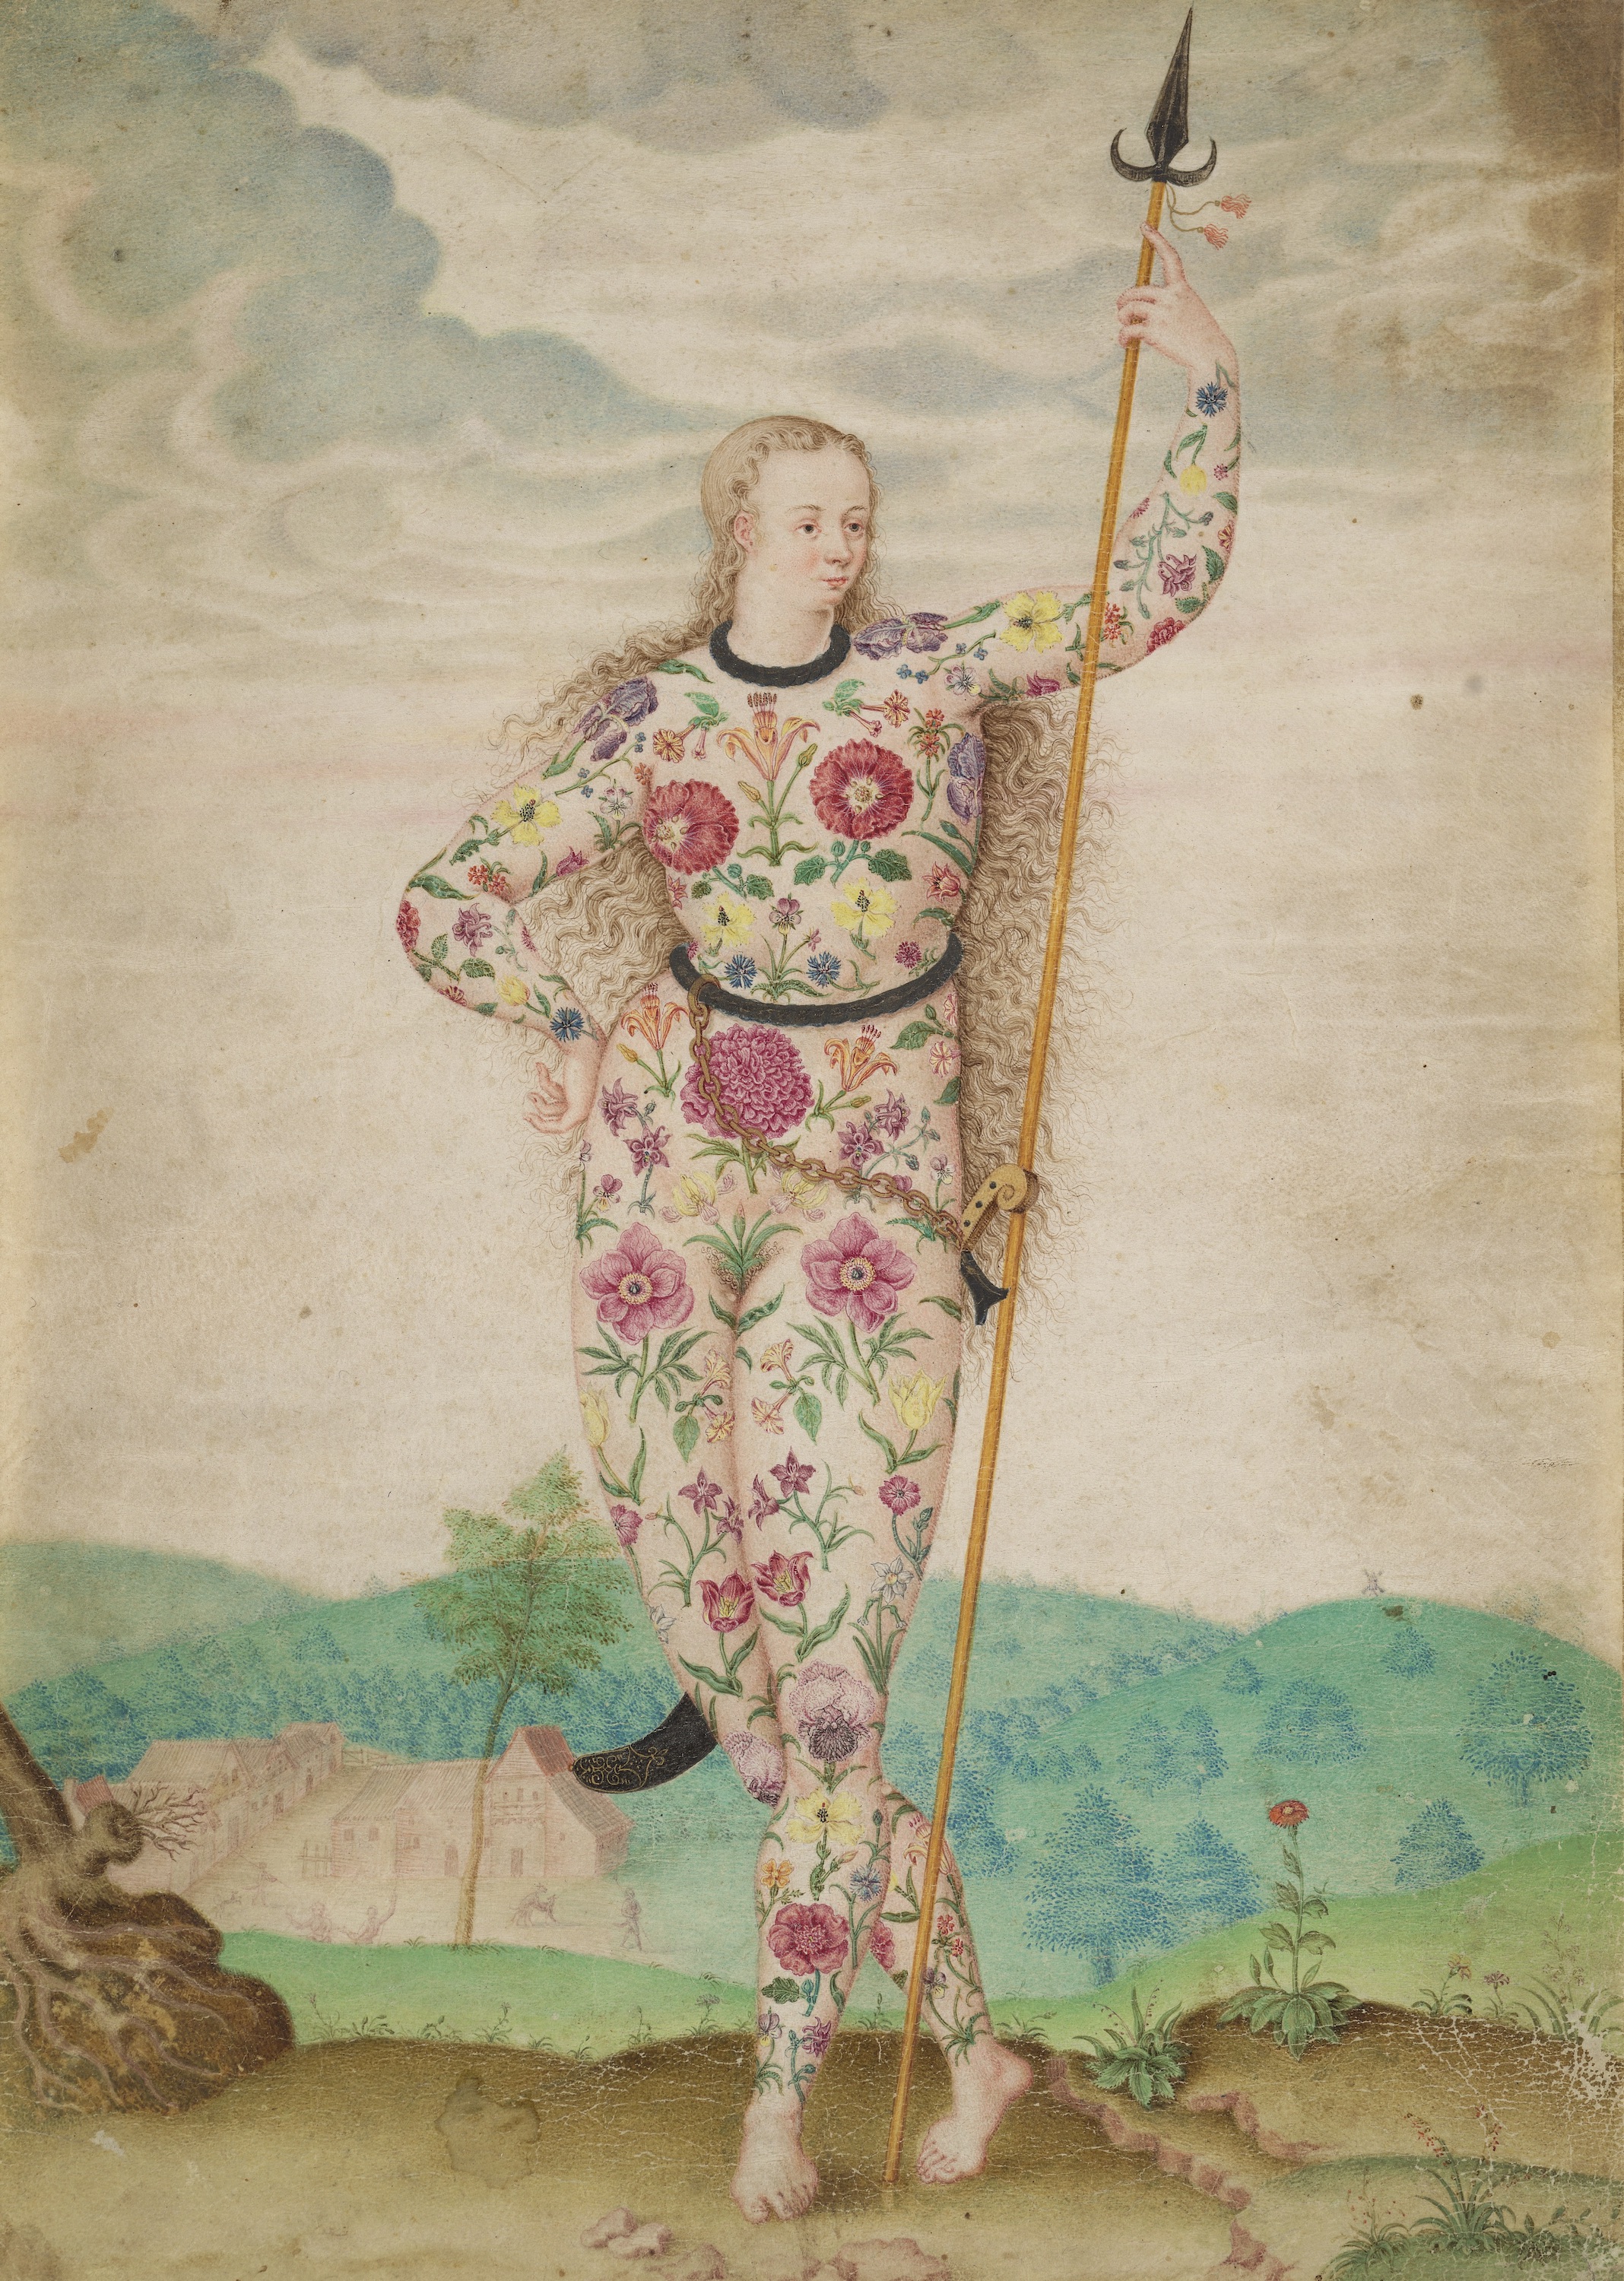 若いピクト人の娘 by Jacques Le Moyne de Morgues - 1585年頃 - 26 × 18.7 cm 